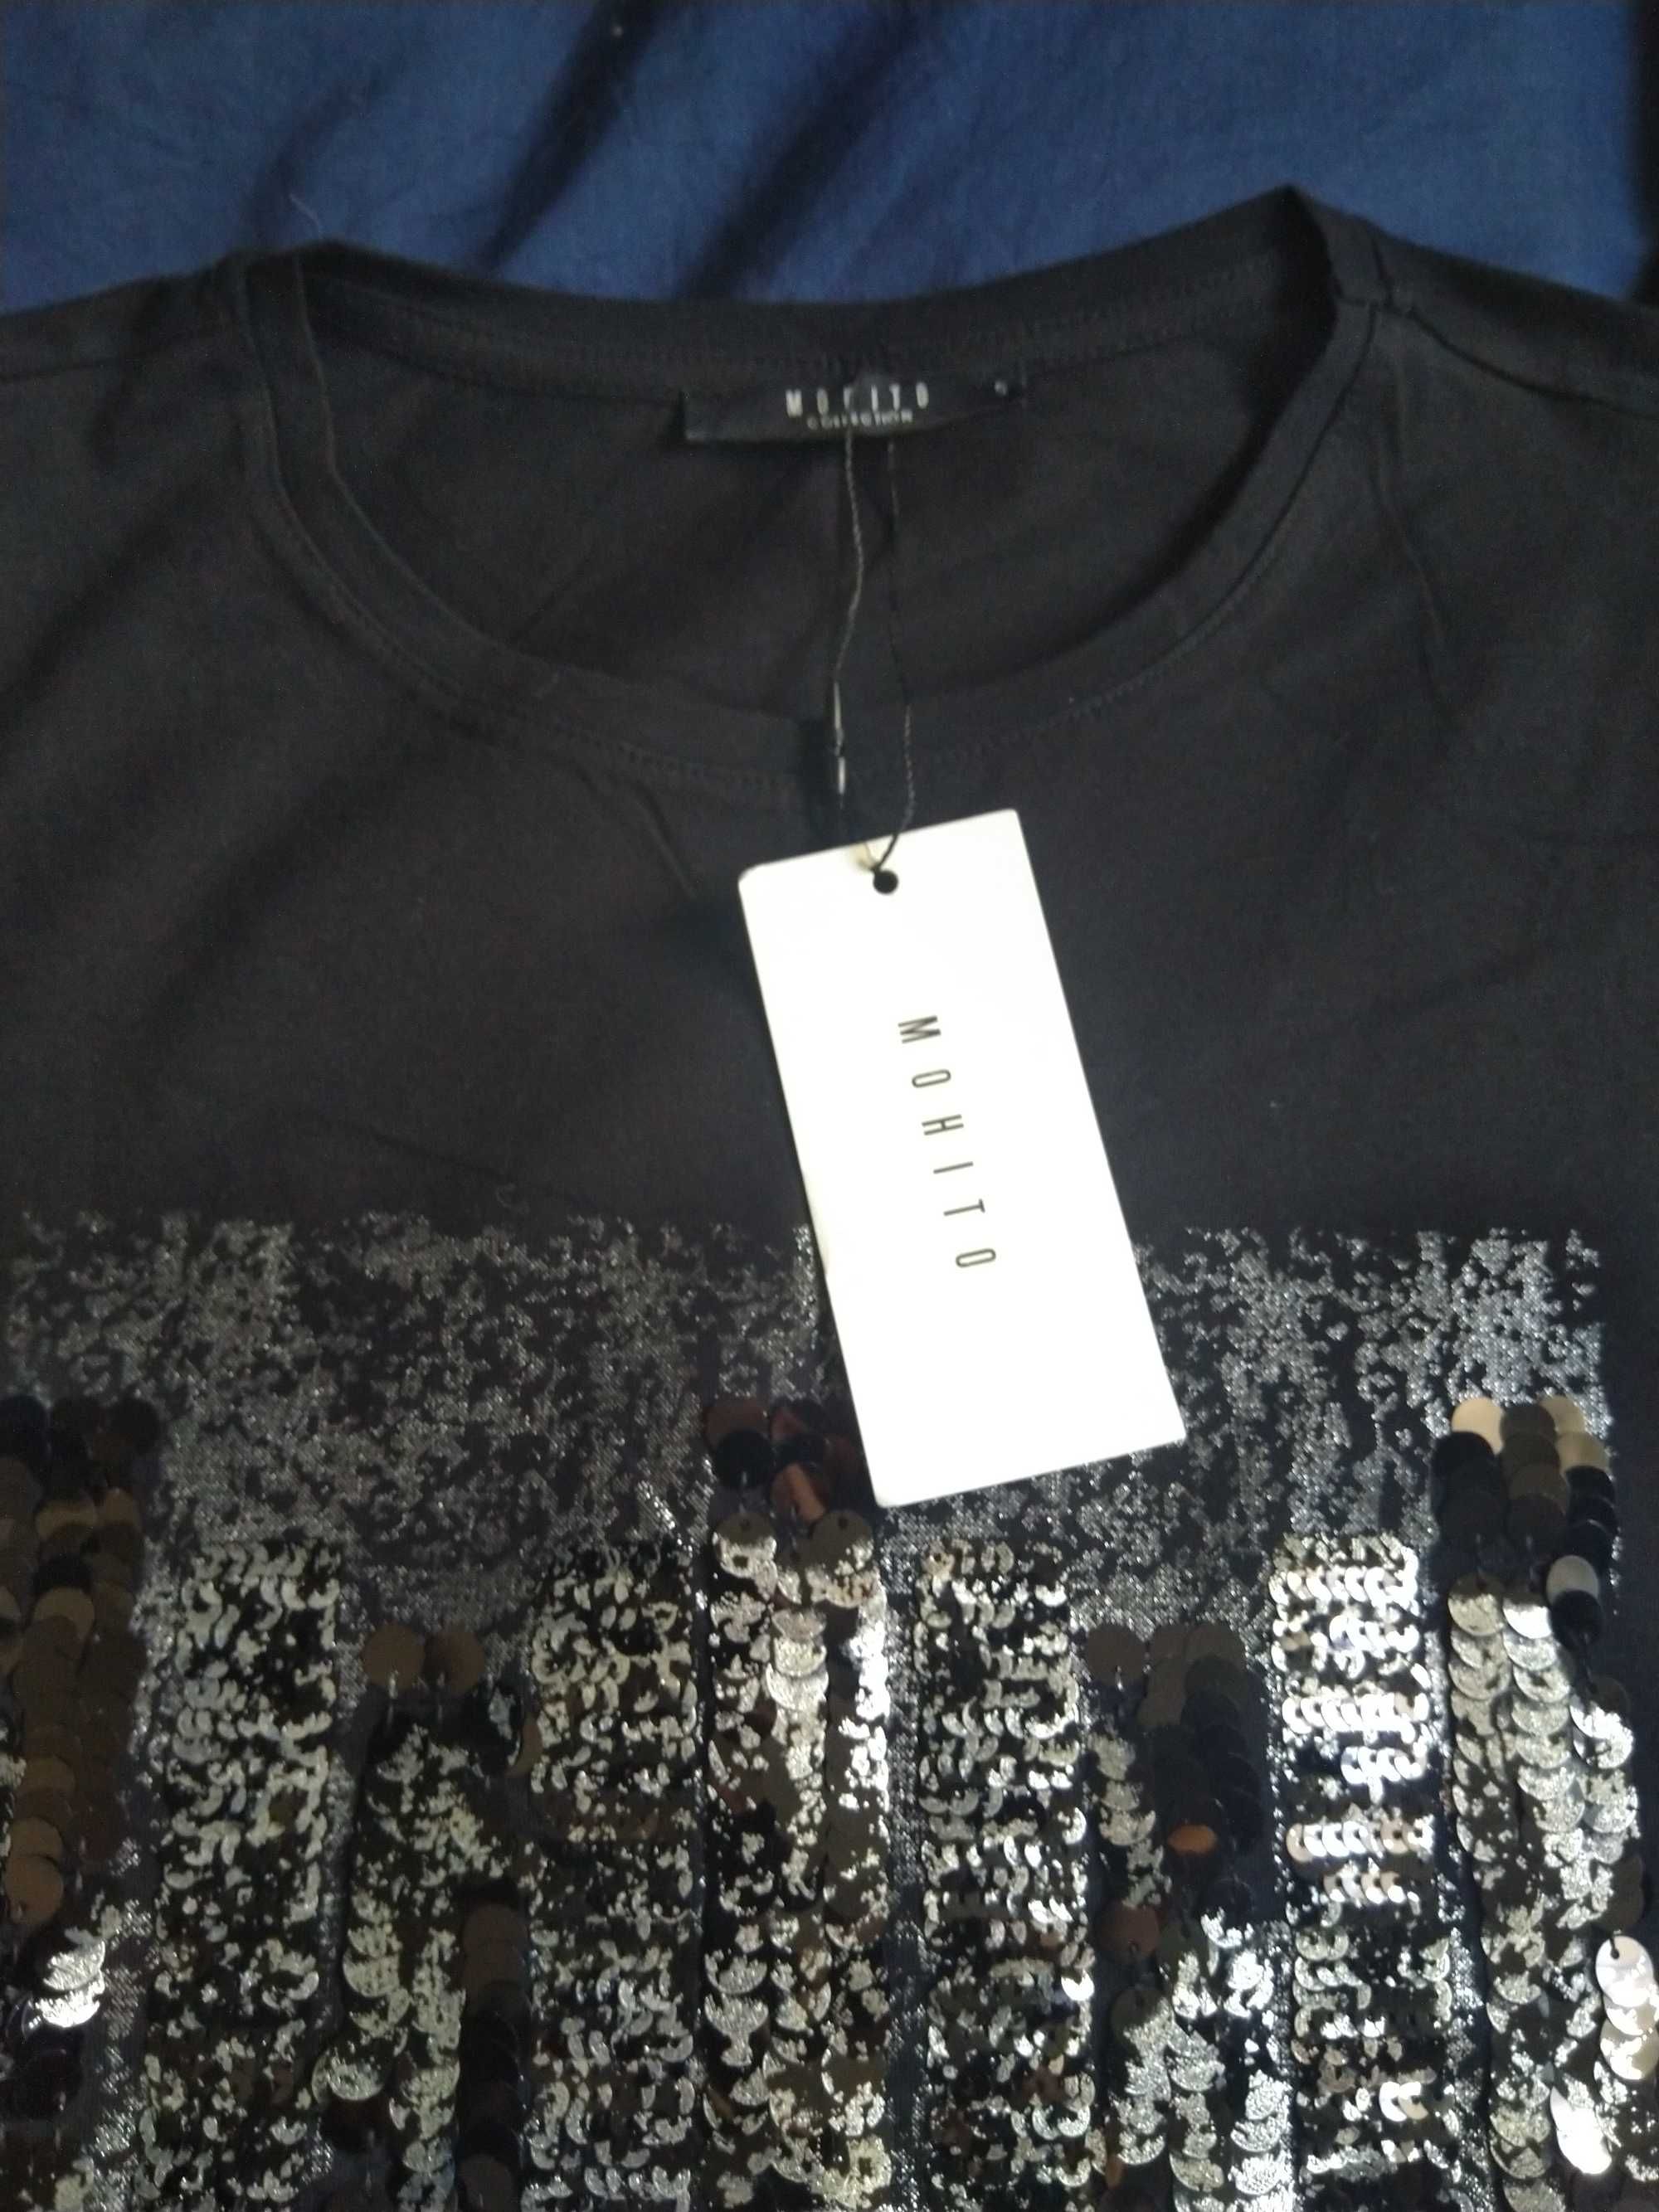 Czarna bluzka Mohito rozmiar S, cekinowa wzór nowa z metką.